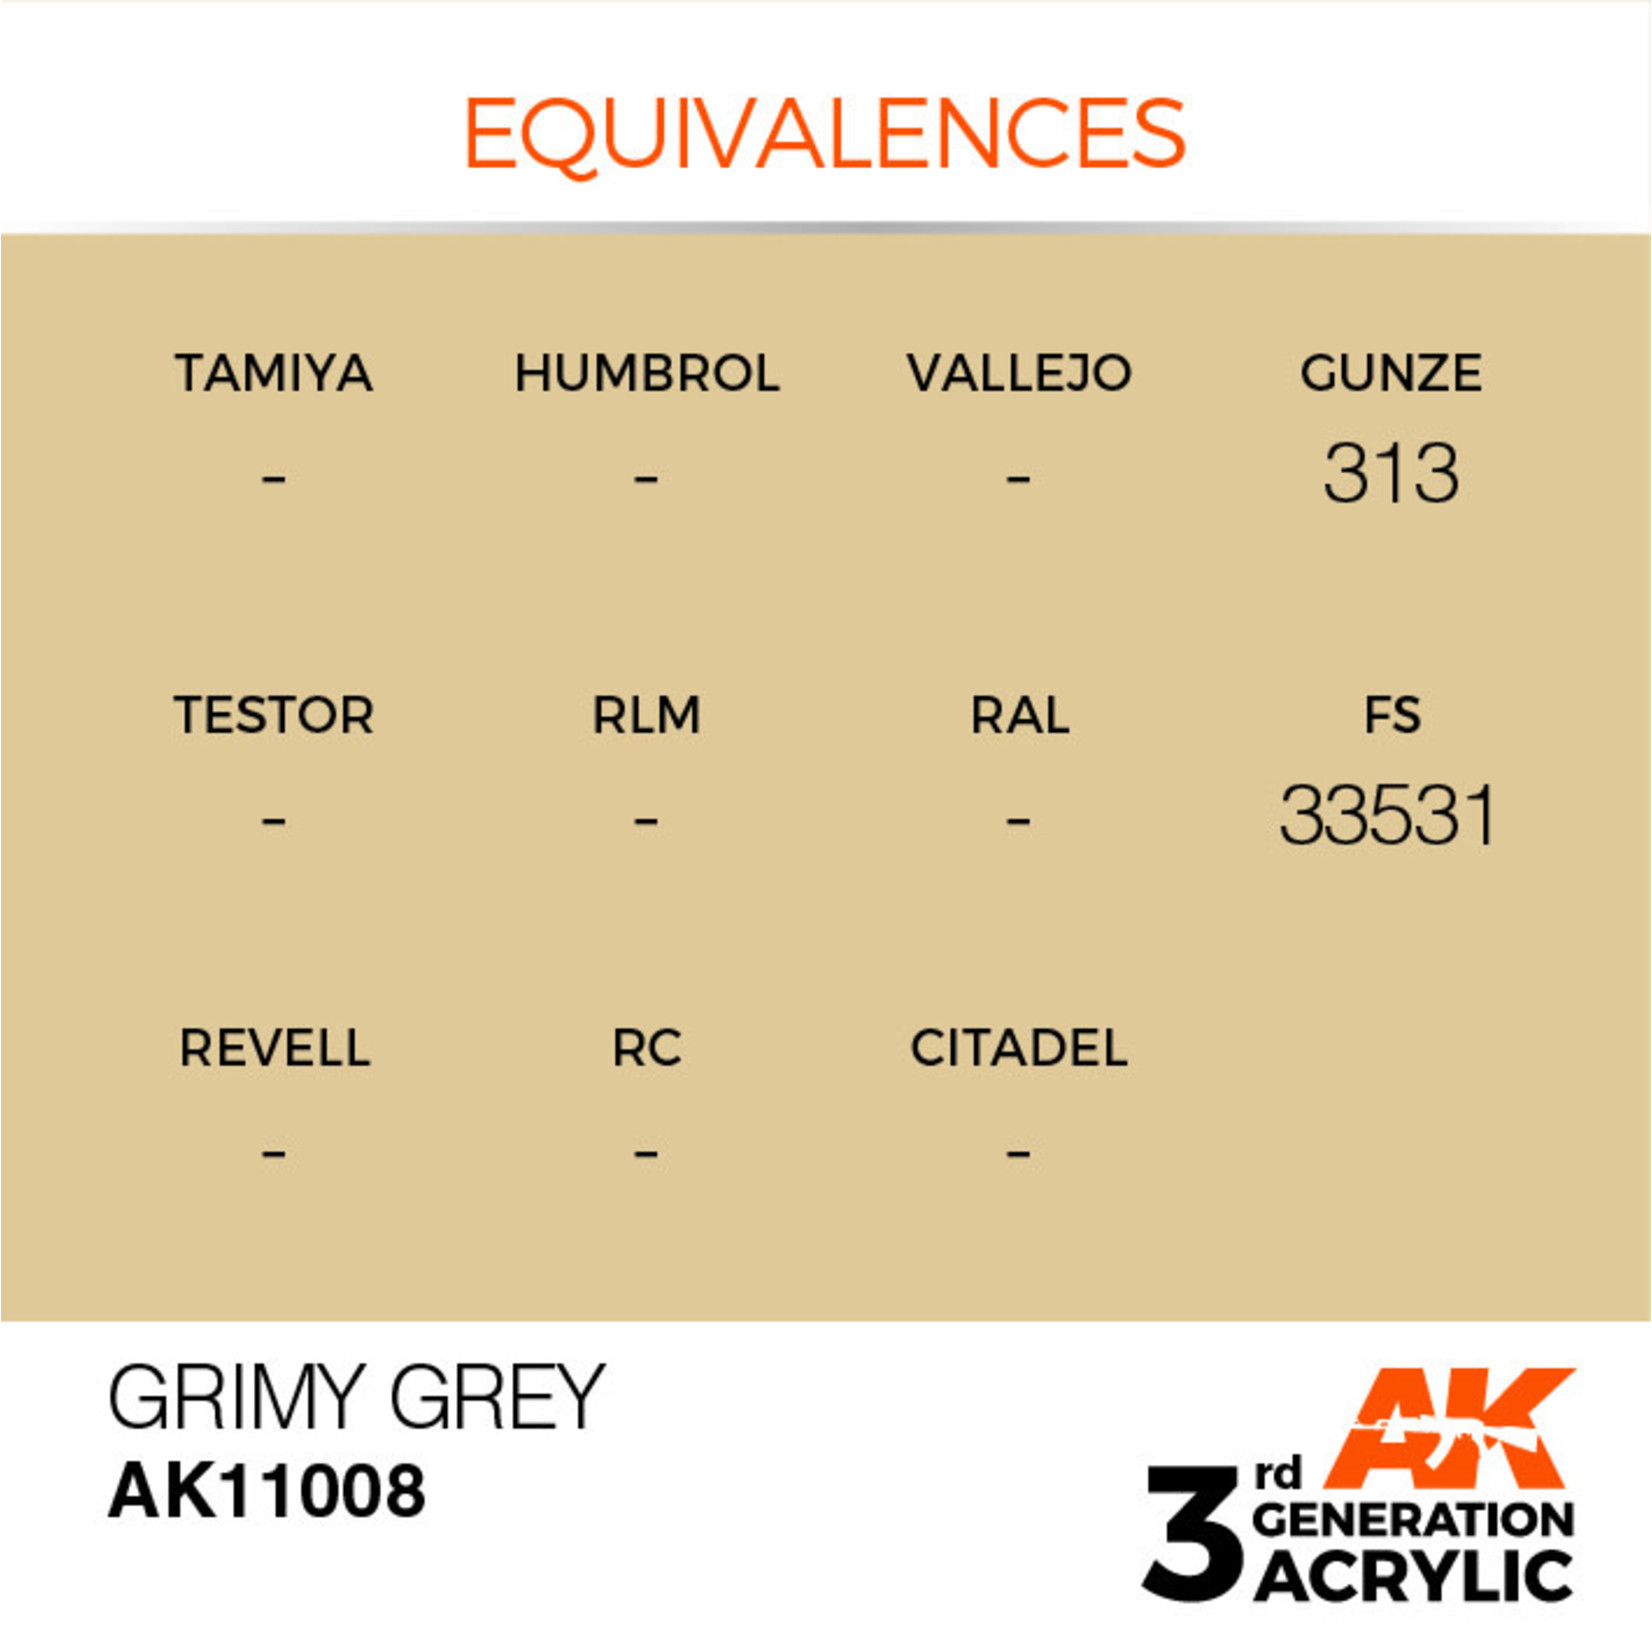 AK Interactive AK11008 3G Acrylic Grimy Grey 17ml